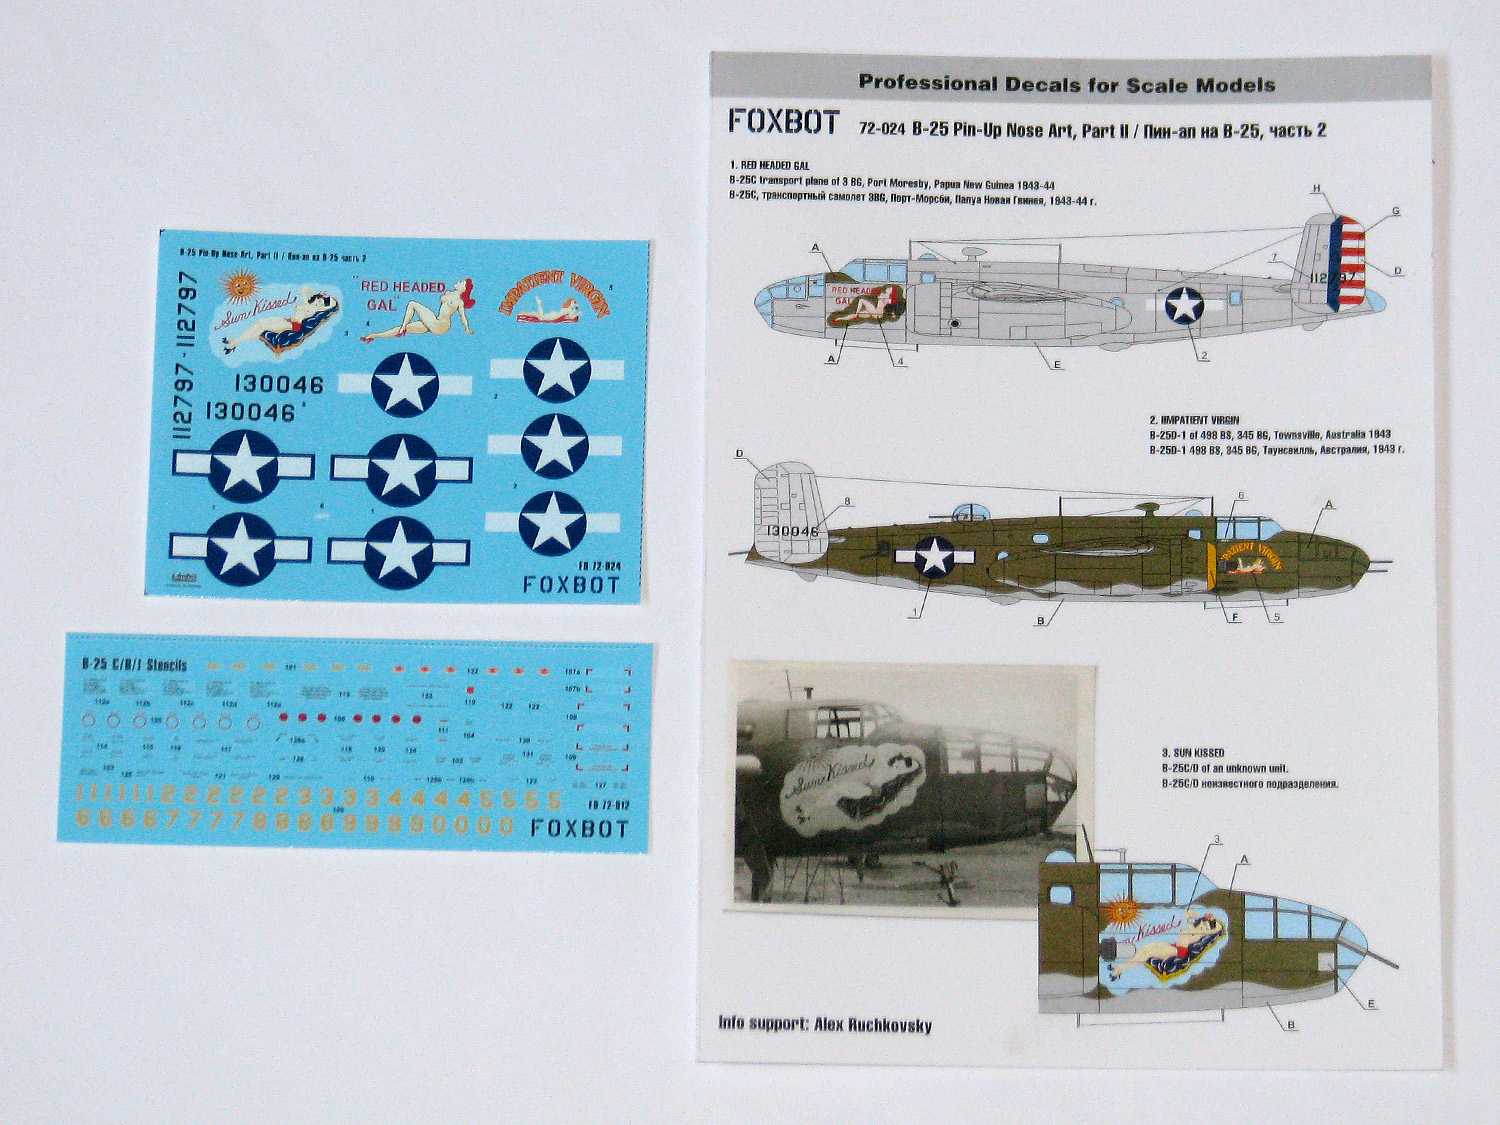  Foxbot Decals Décal Nord-Américaine B-25C / D Mitchell Art du nez et